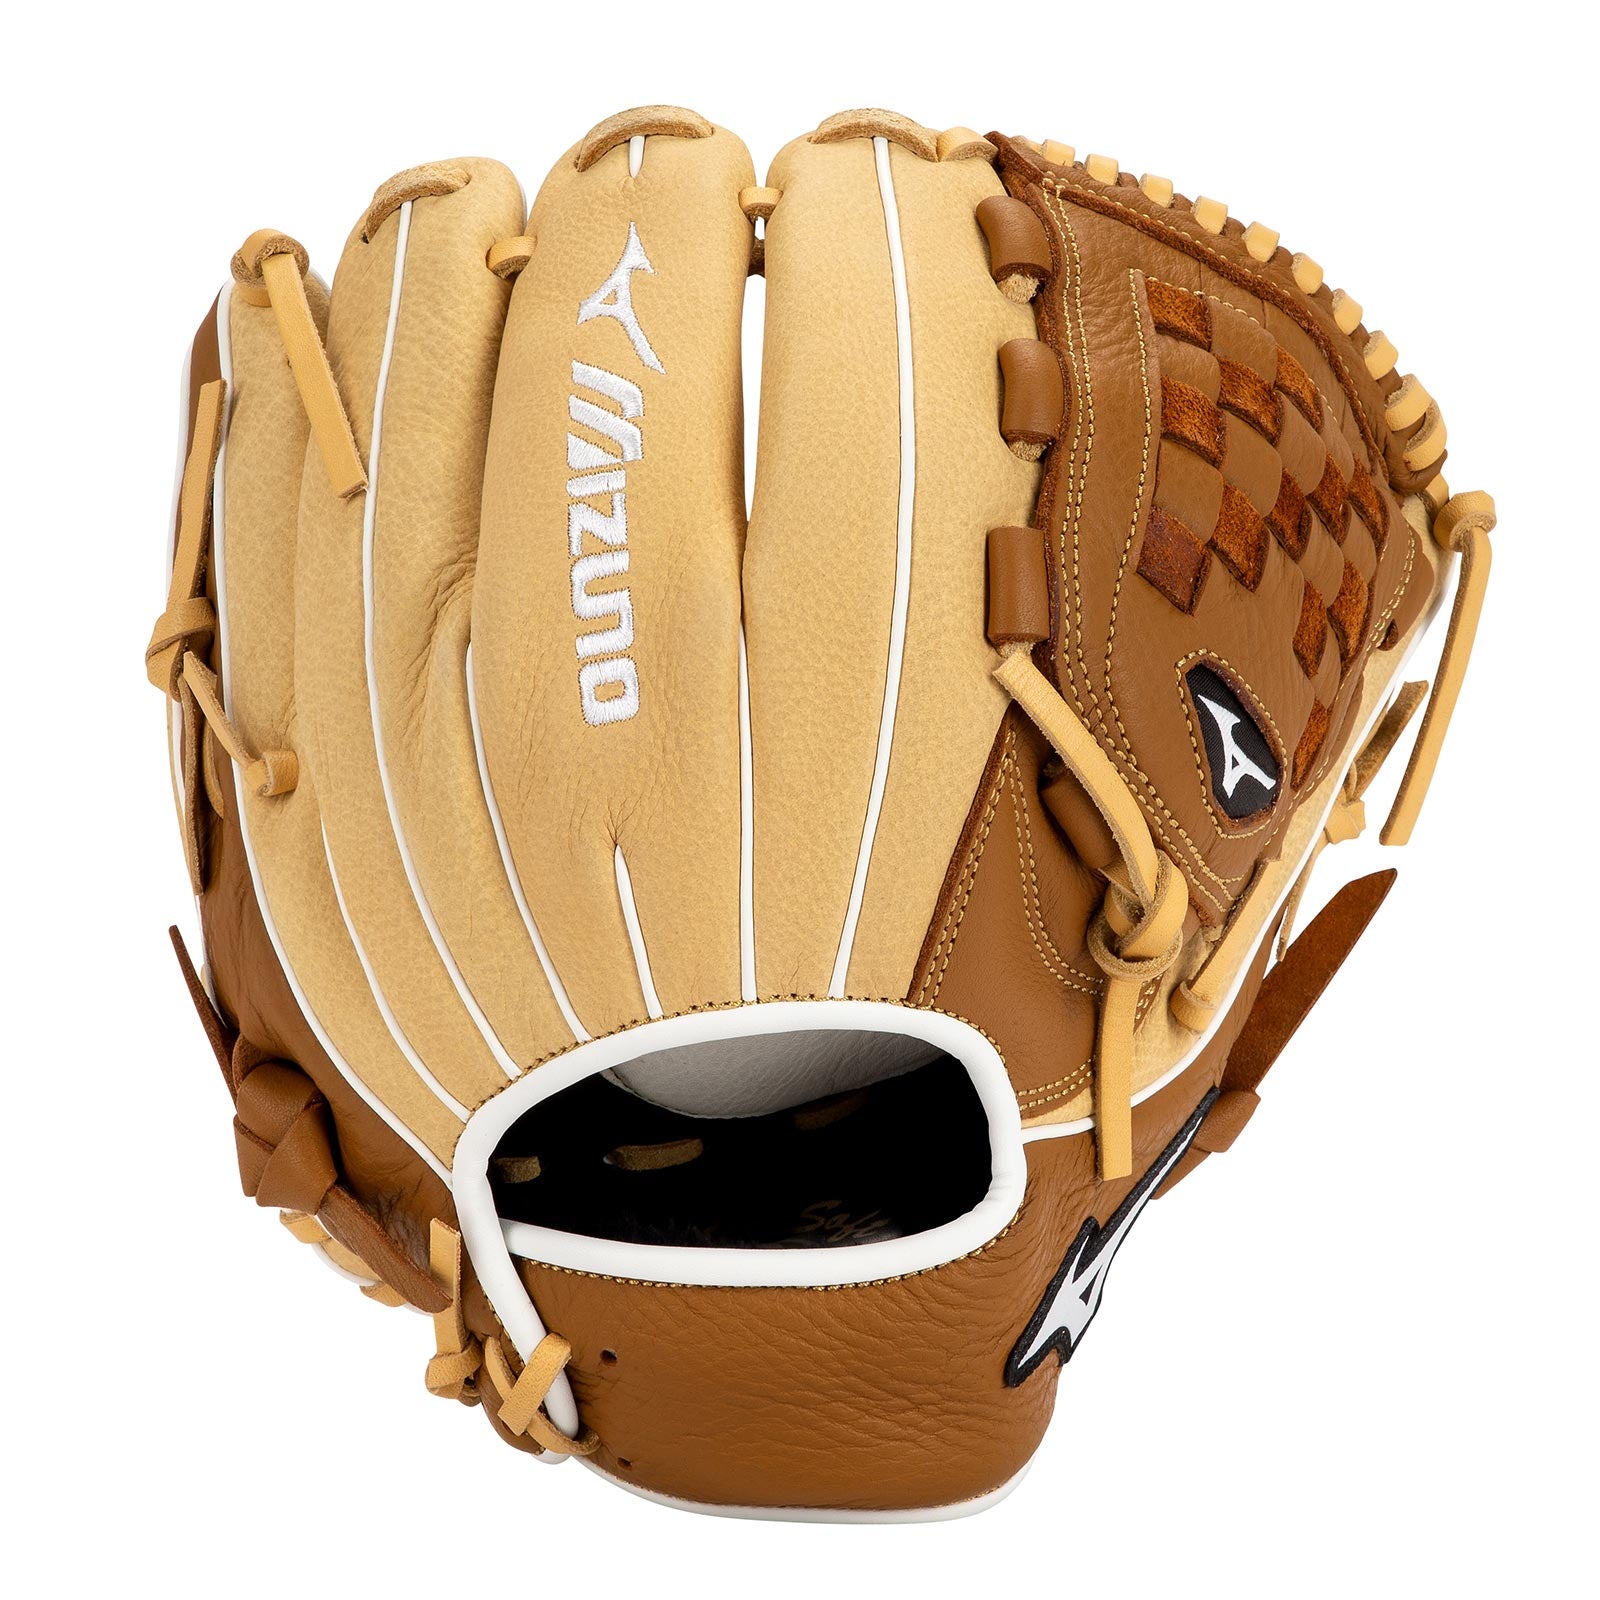 Mizuno Franchise Baseball GFN1100B4 11" Baseball Glove